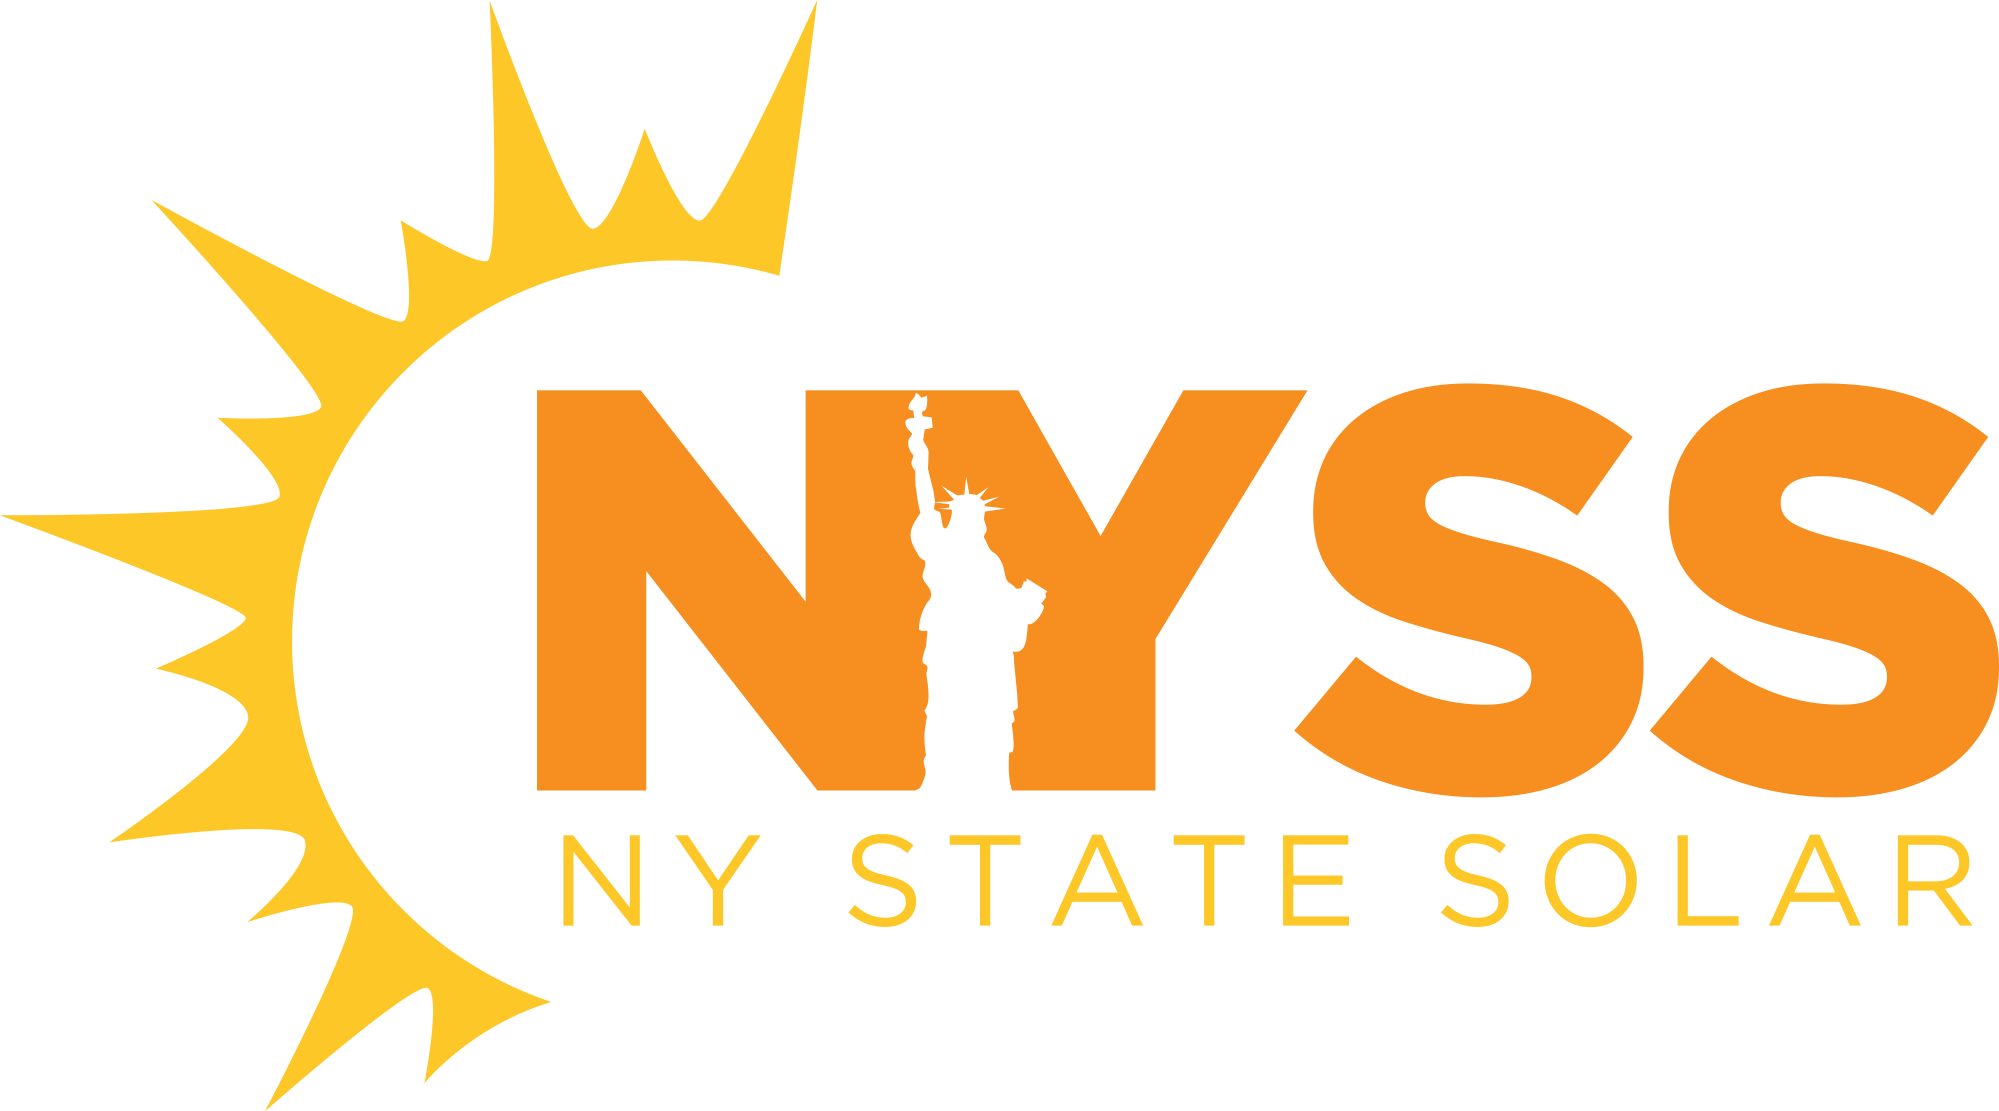 NY State Solar Company Logo